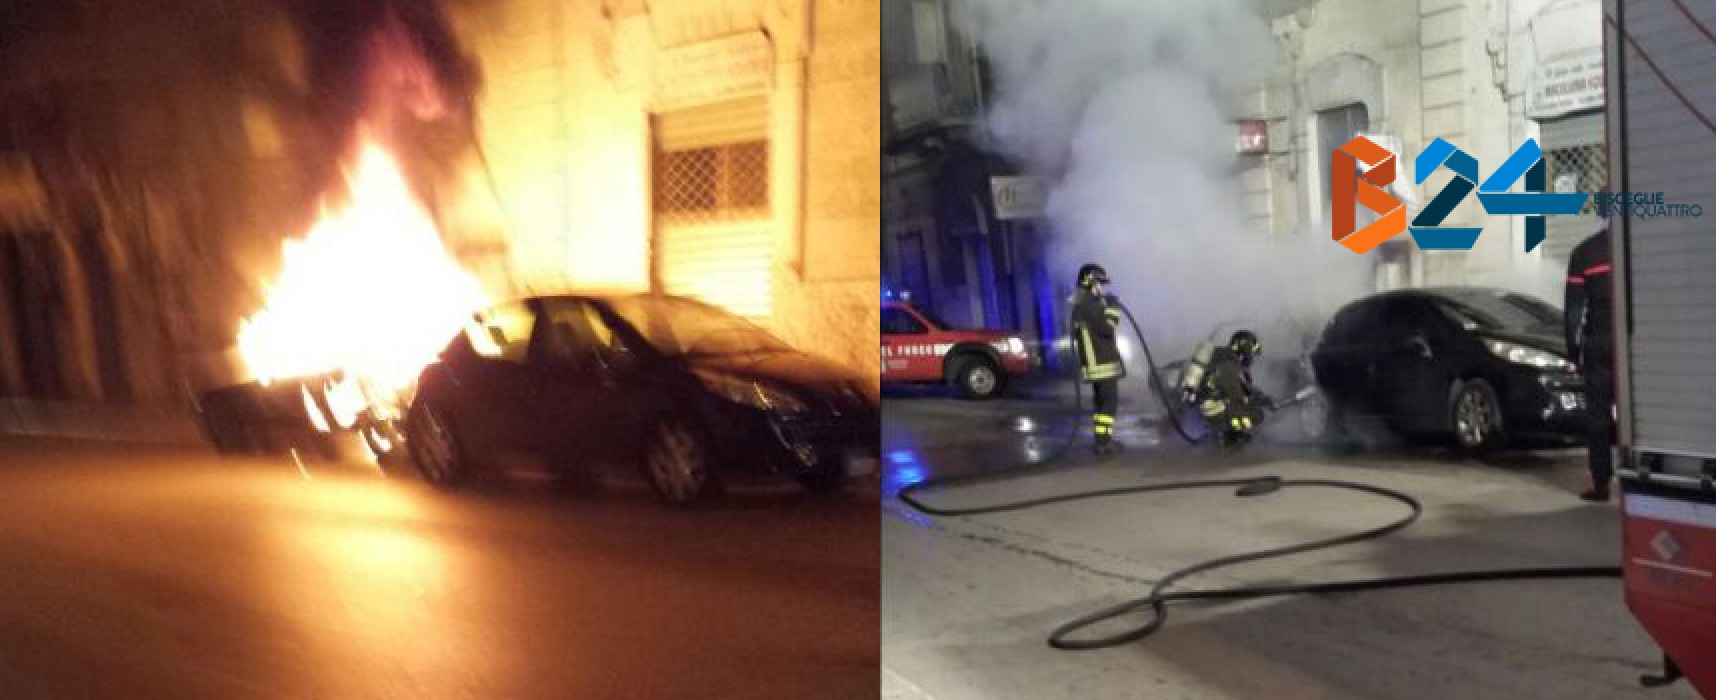 Due auto in fiamme nella notte, vigili del fuoco in azione in via Giovanni Bovio / FOTO